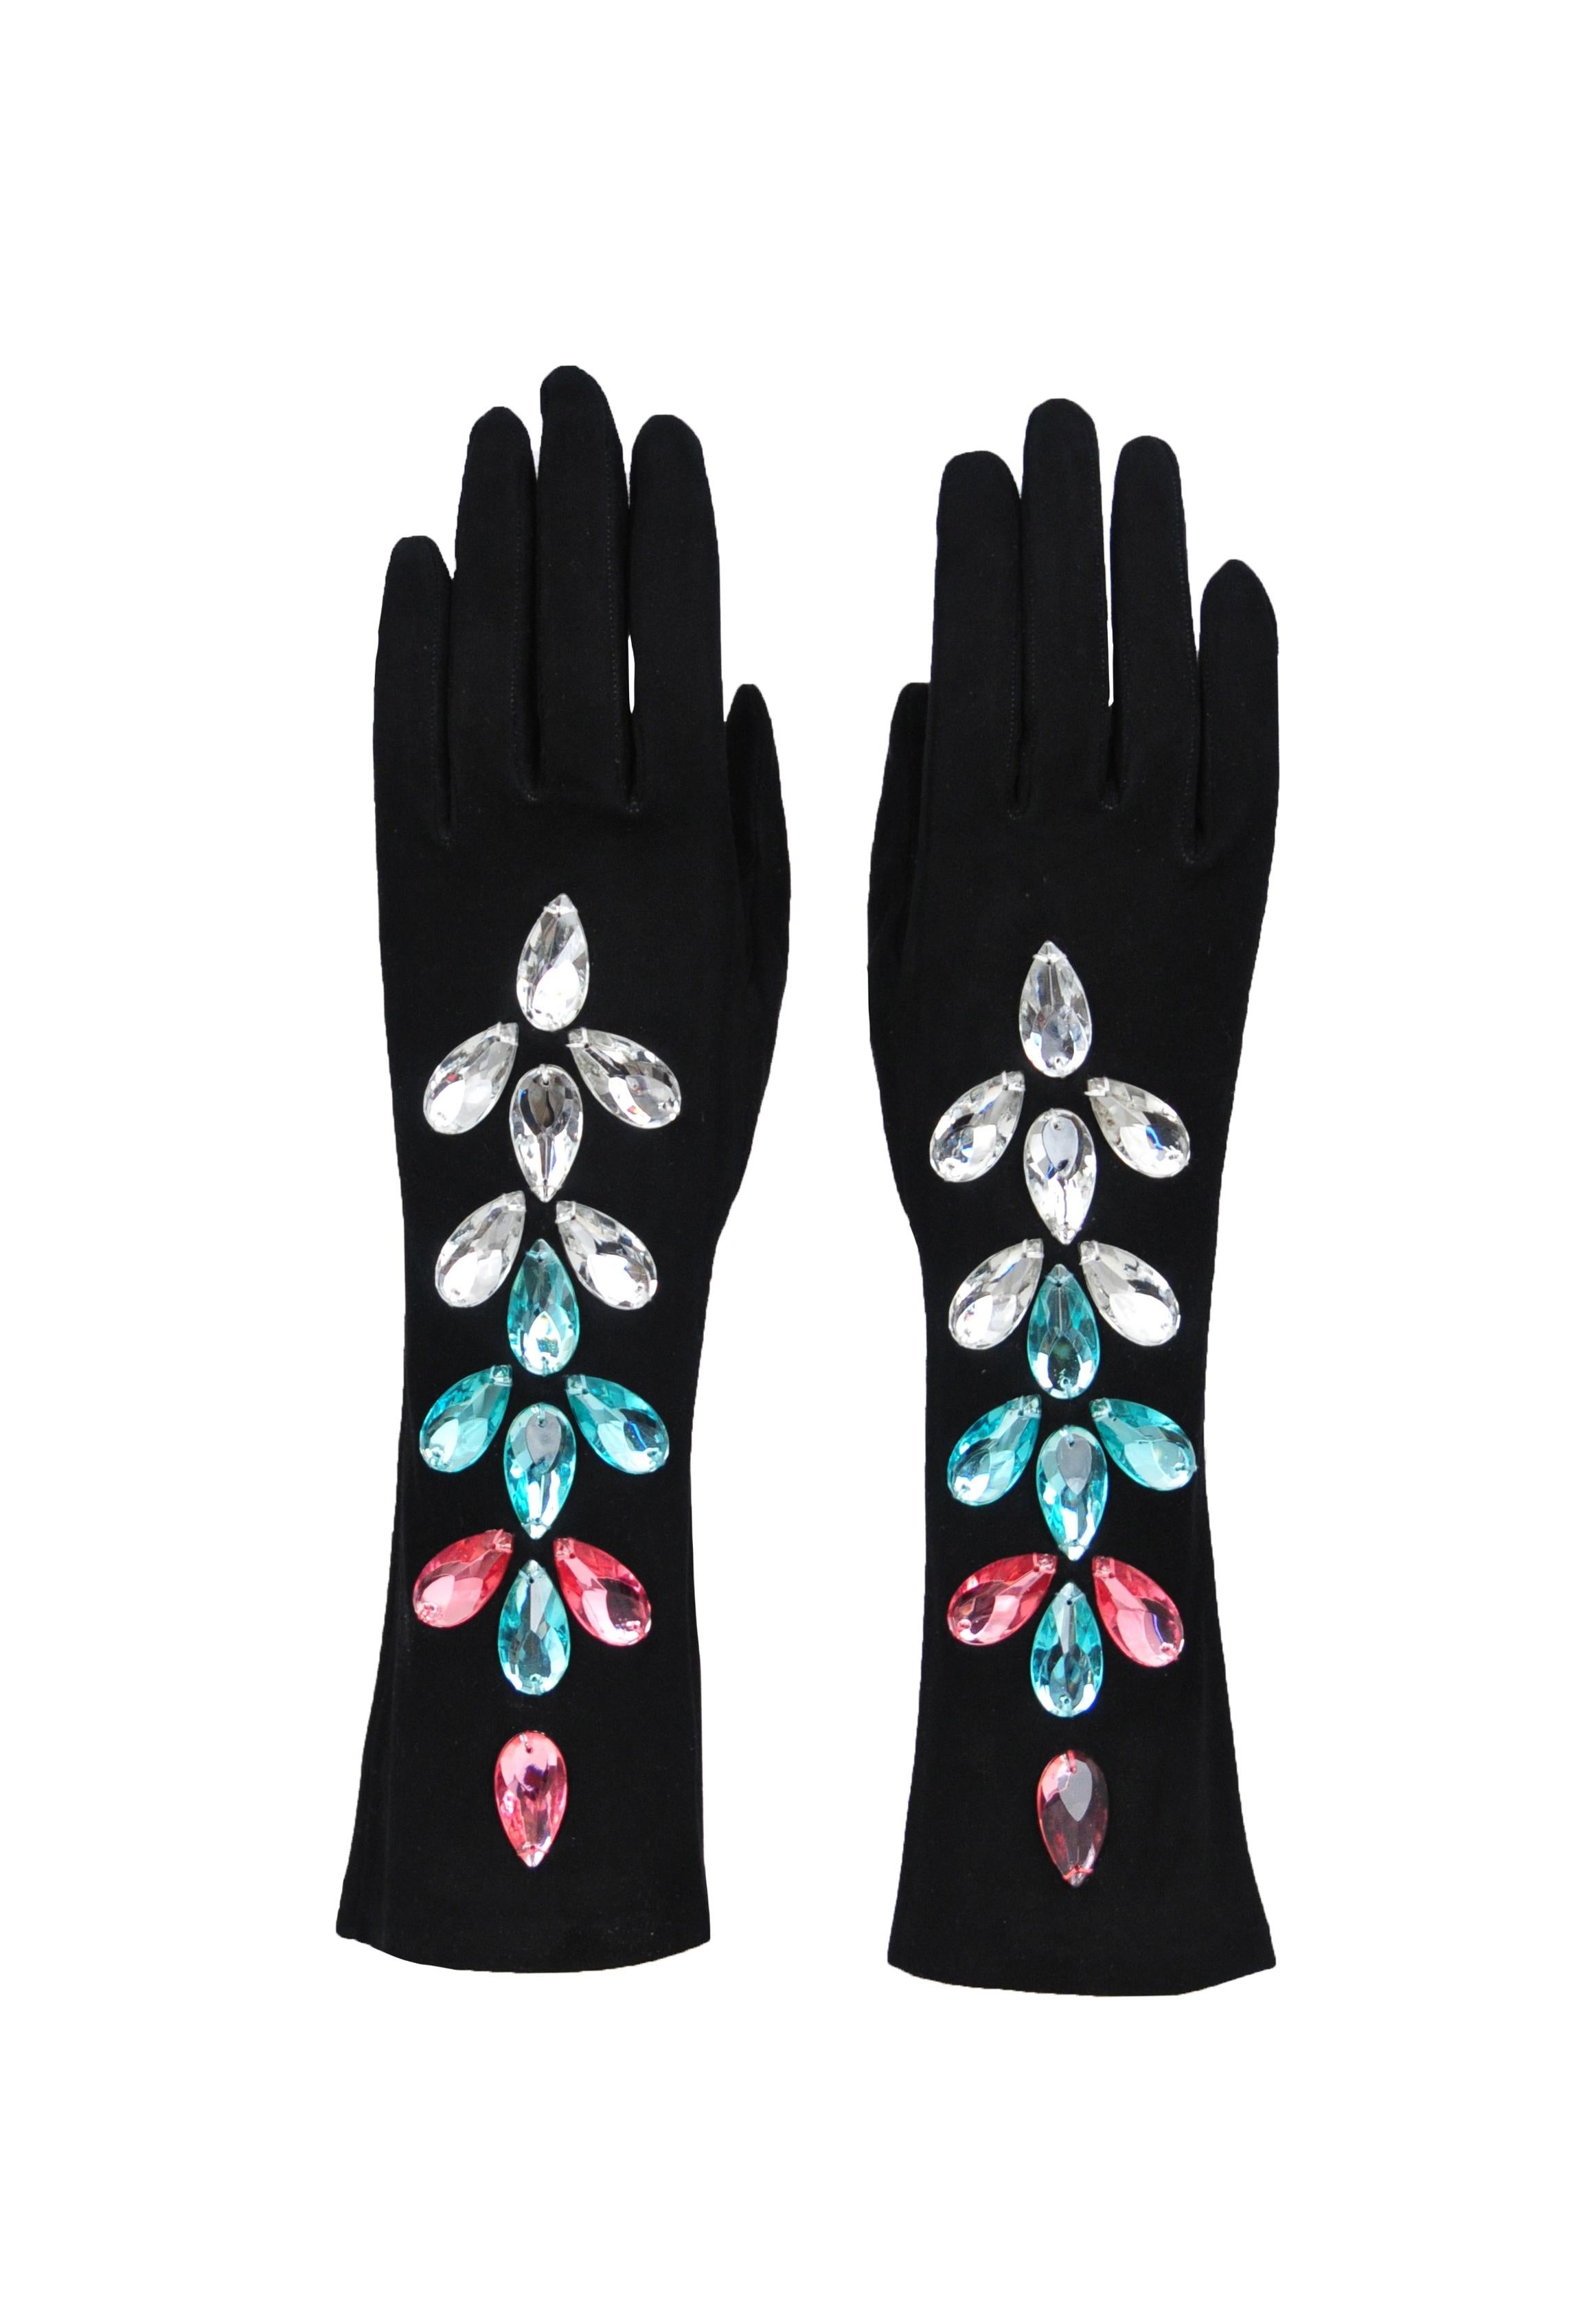 Black Yves Saint Laurent Crystal Beaded Gloves